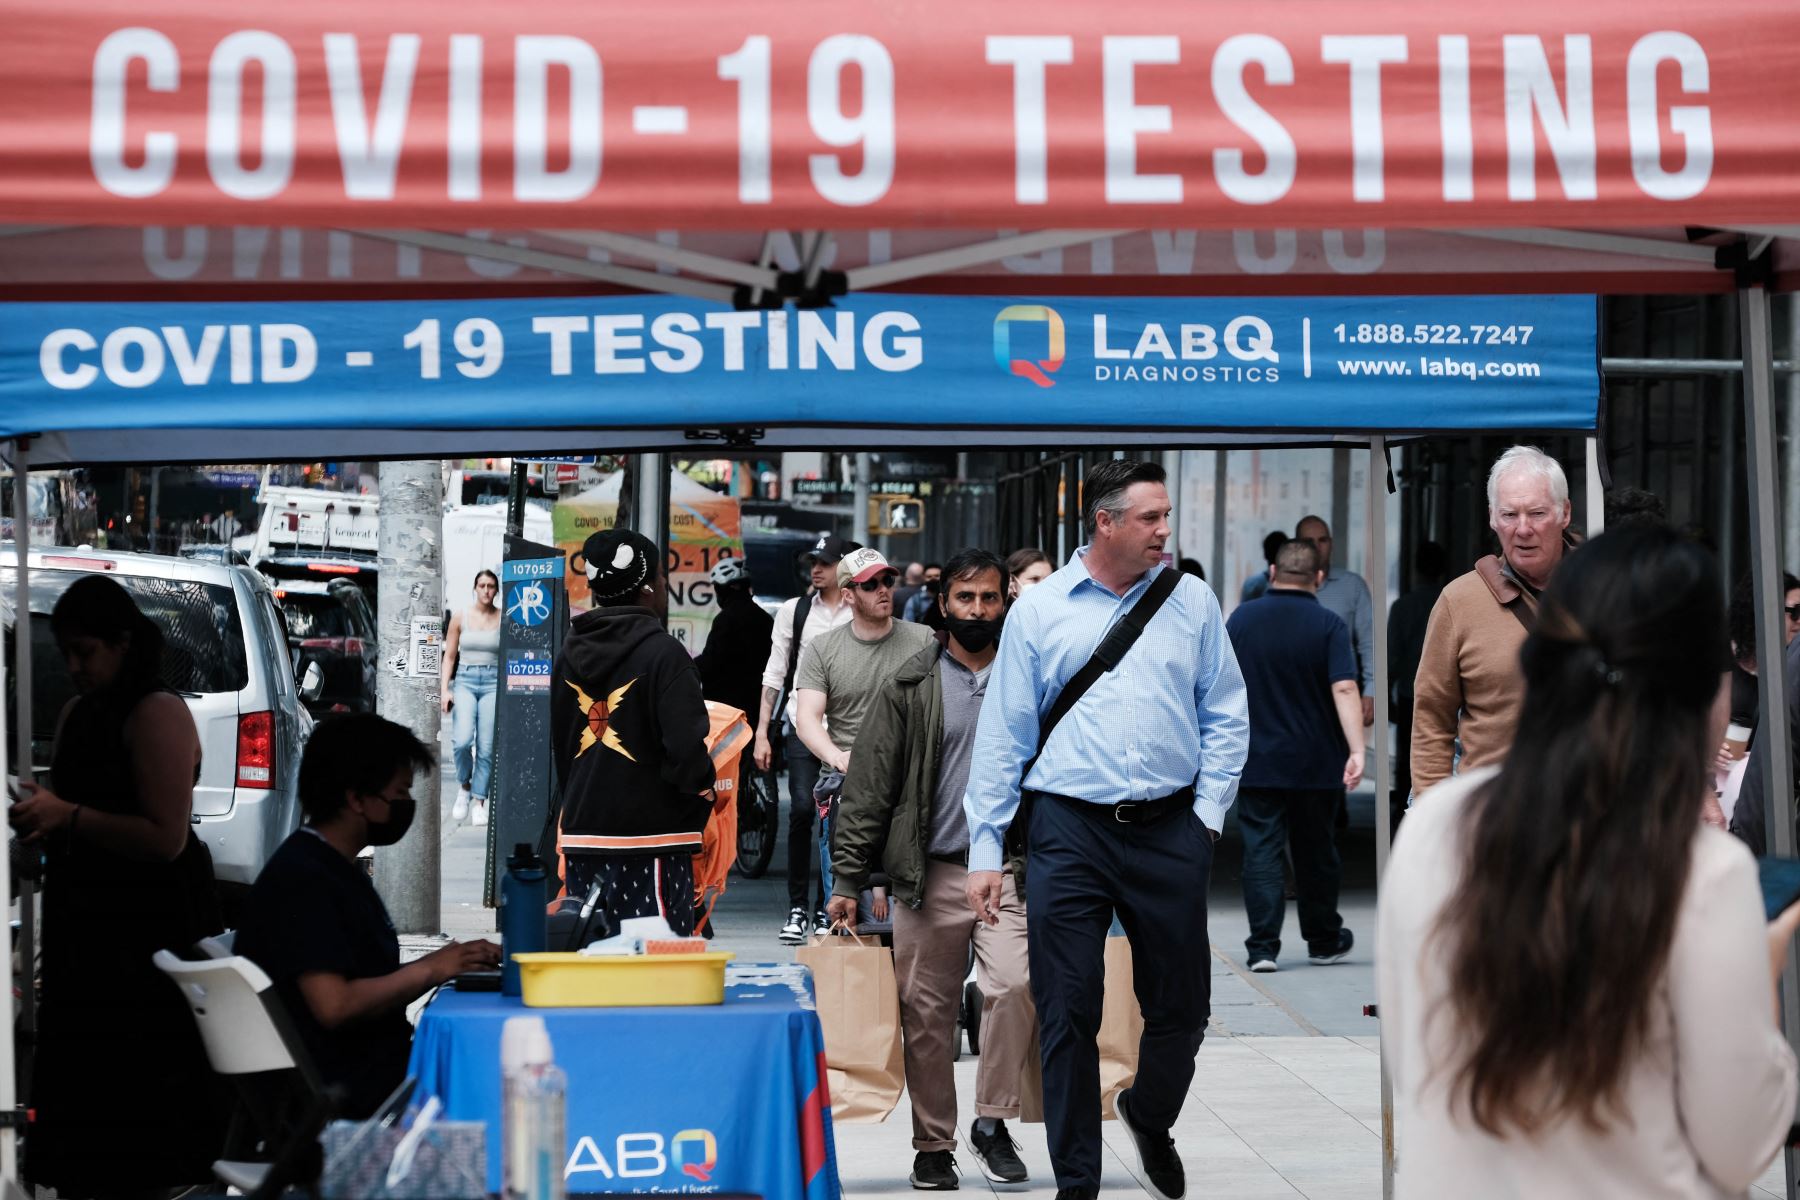 La gente pasa por un sitio de prueba de Covid en la ciudad de Nueva York. El comisionado de salud de Nueva York, el Dr. Ashwin Vasan, pasó de un nivel de alerta de COVID-19 "medio" a un nivel de alerta "alto" en los cinco condados luego de un aumento en los casos. Foto: AFP